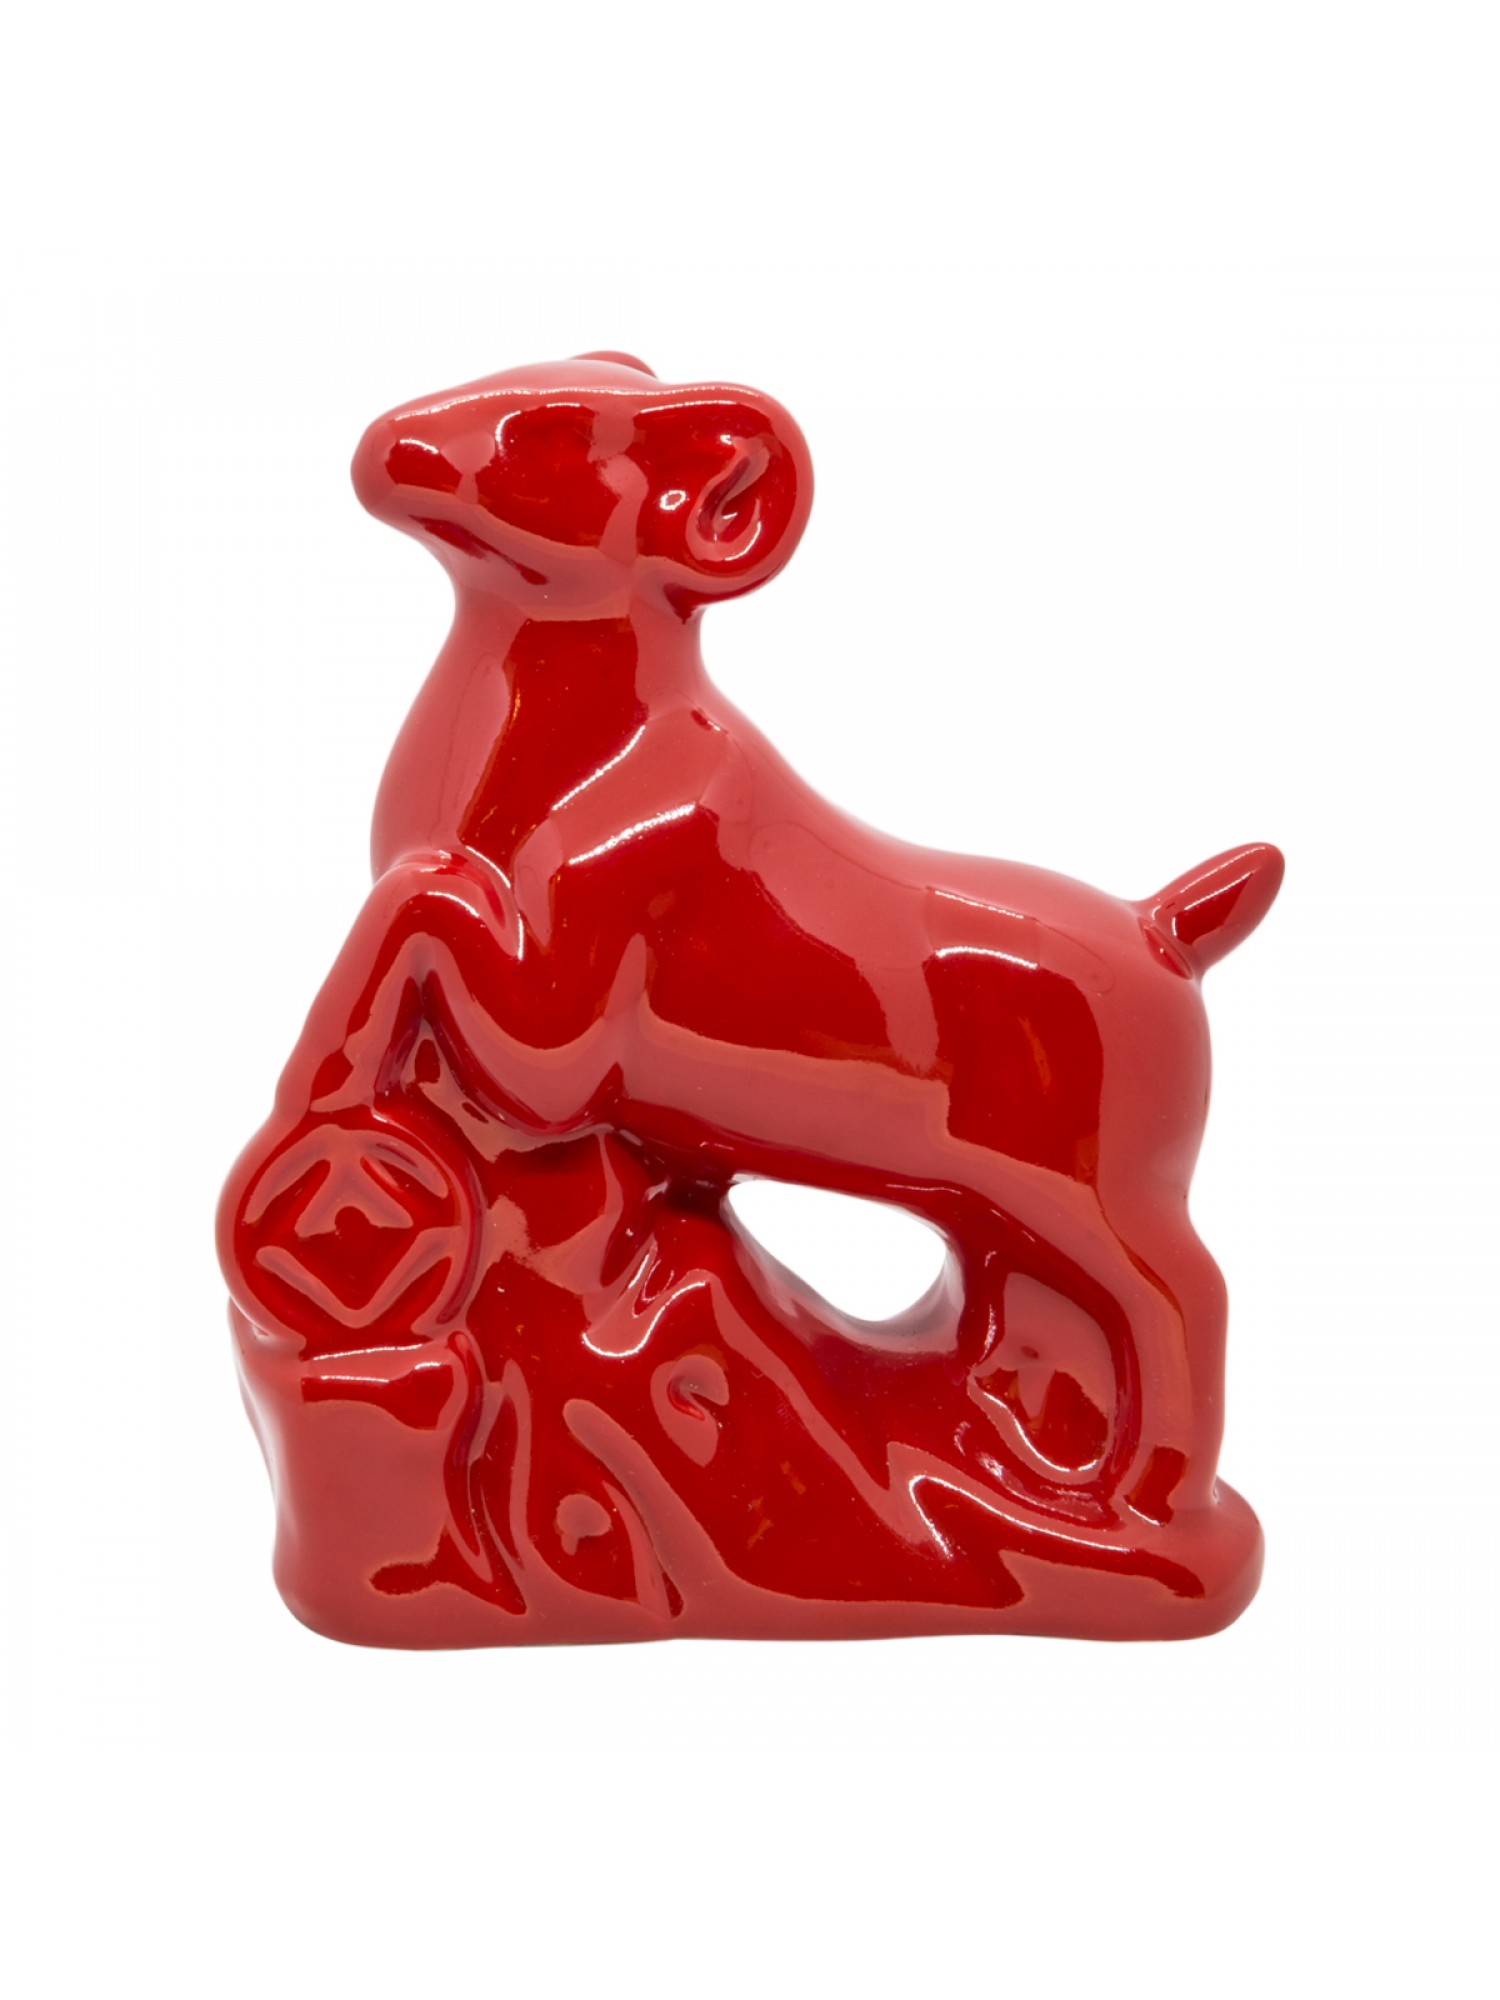 Статуэтка "Коза Красная" из фарфора принесет своему обладателю стабильные улучшения на работе